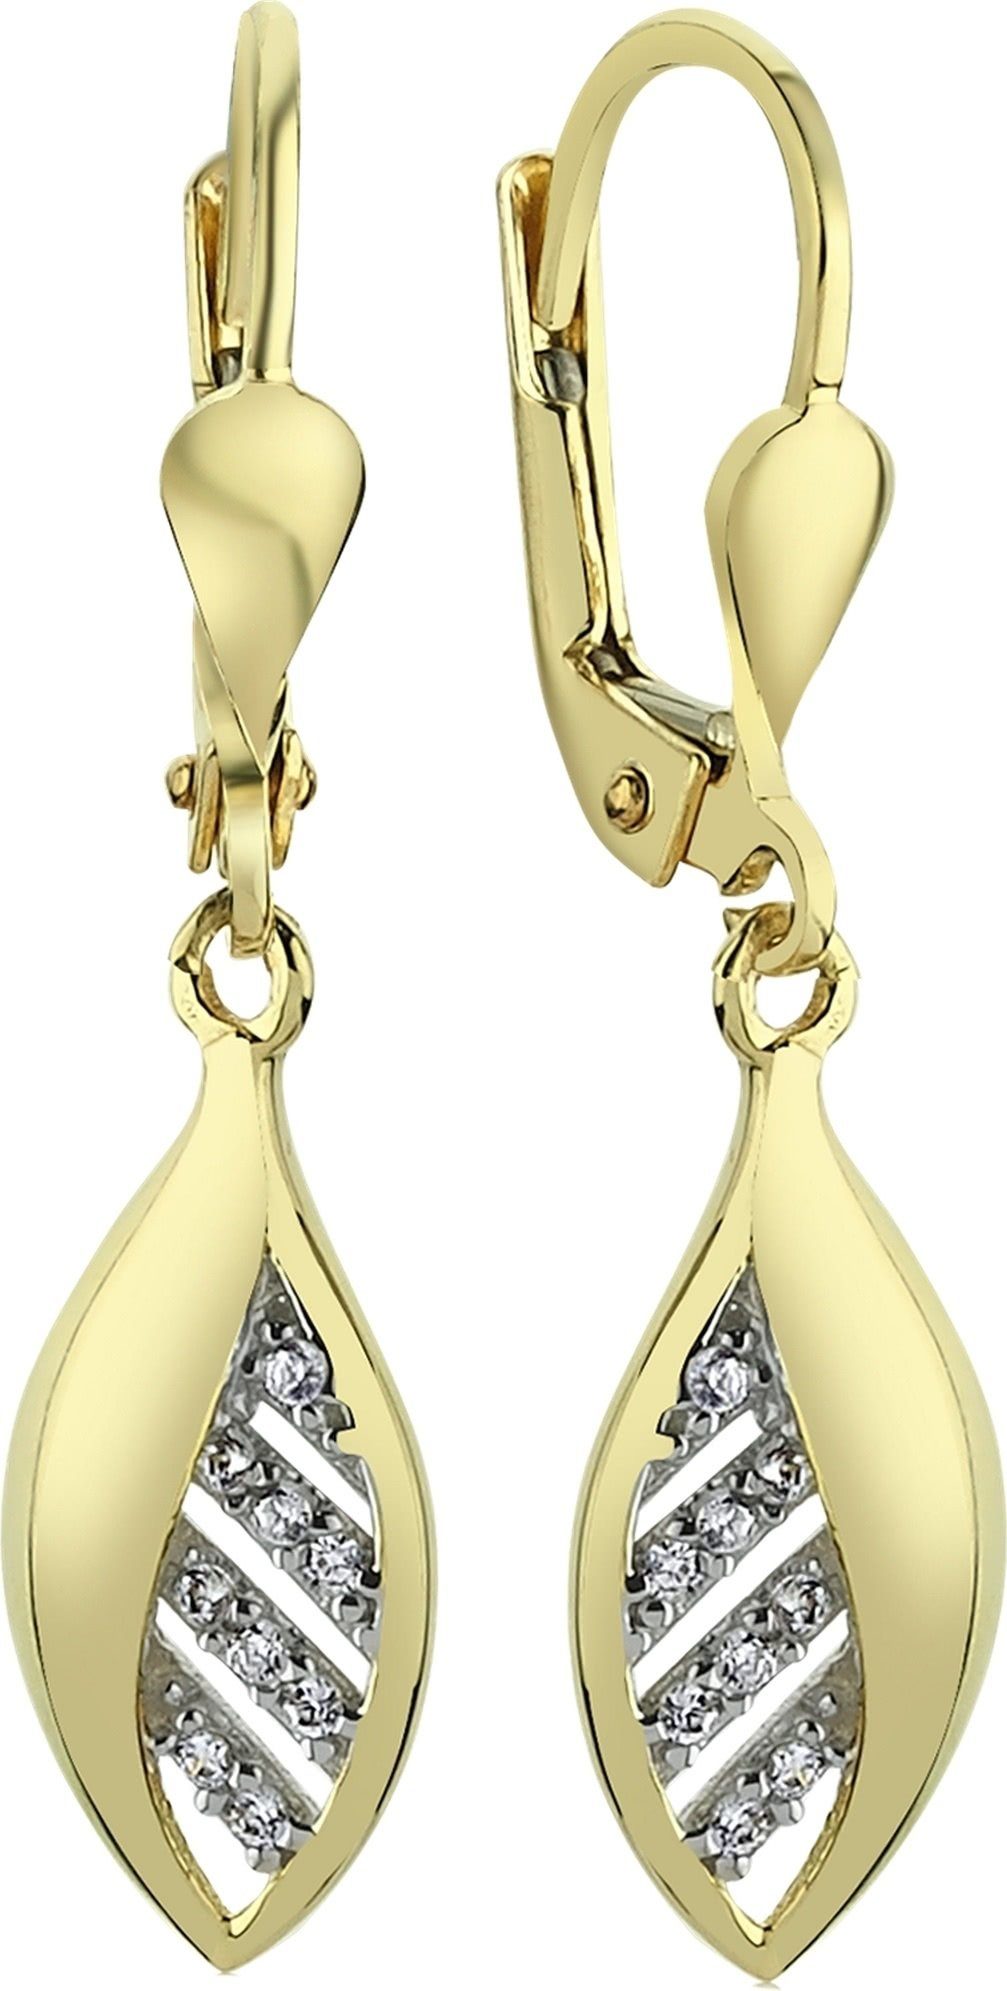 Karat, Balia Gold Balia Paar gold Damen (Ohrhänger), Ohrhänger (Blatt) 333 für weiß, 8 aus Ohrhänger - Gelbgold Ohrhänger 8K Farbe: